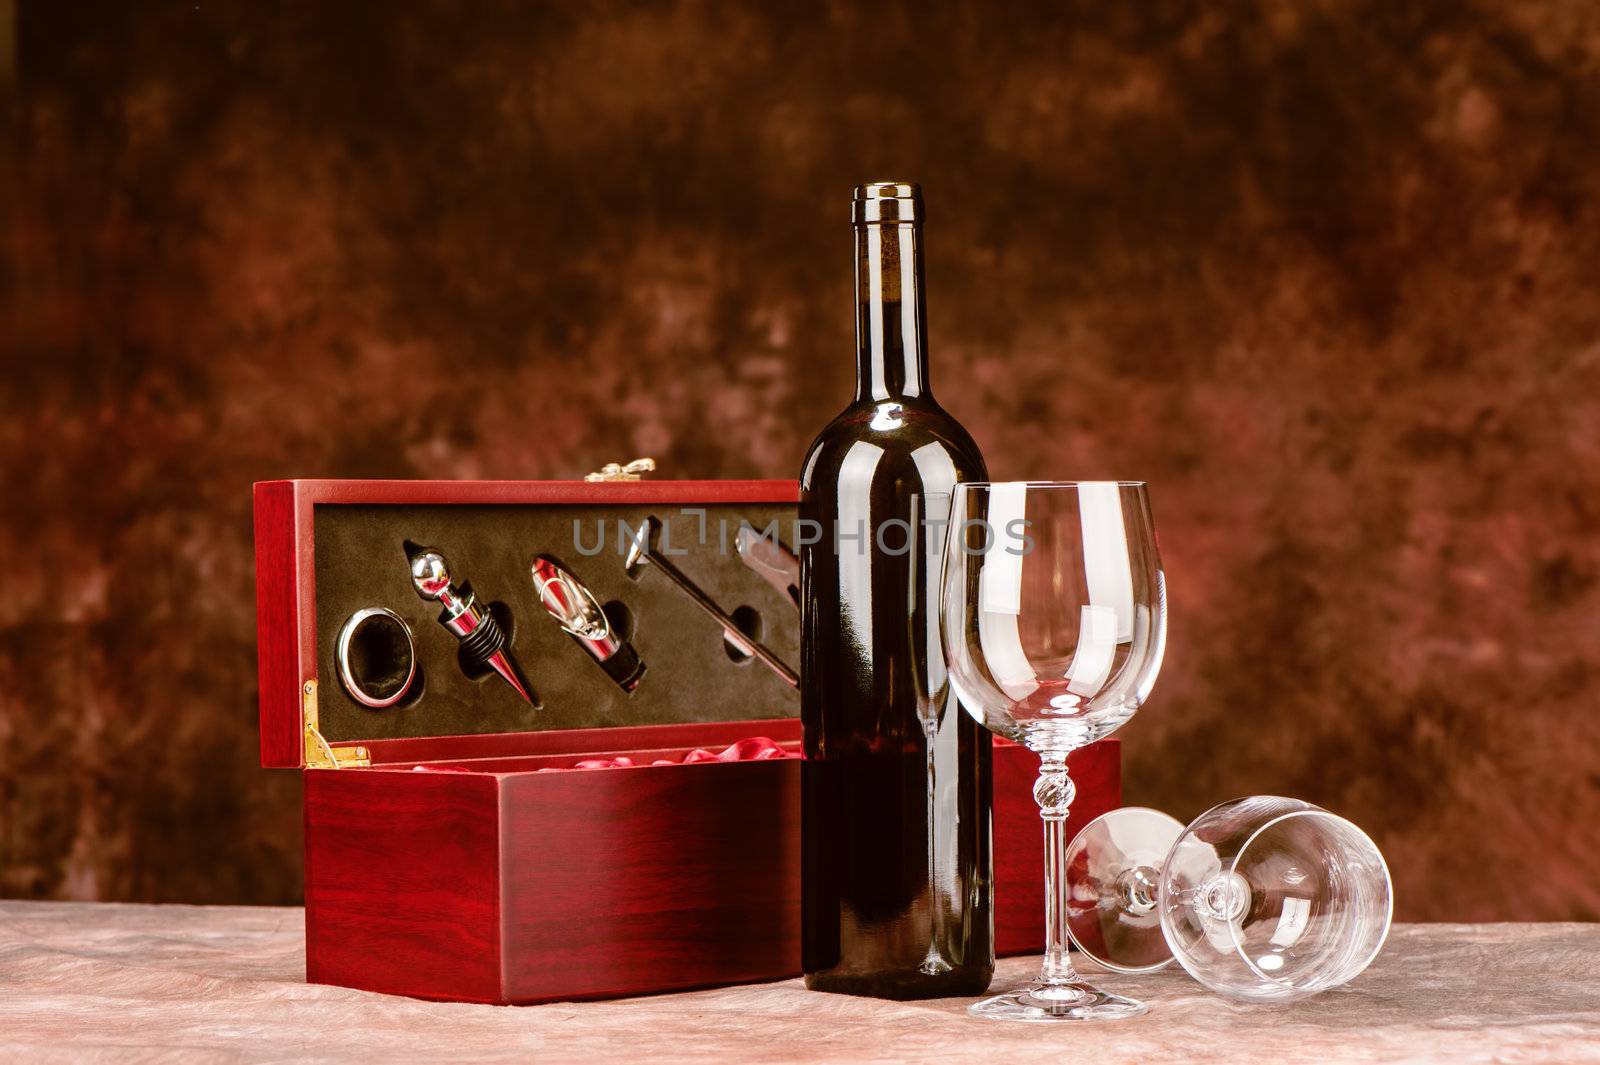 Vintage wine case by imarin